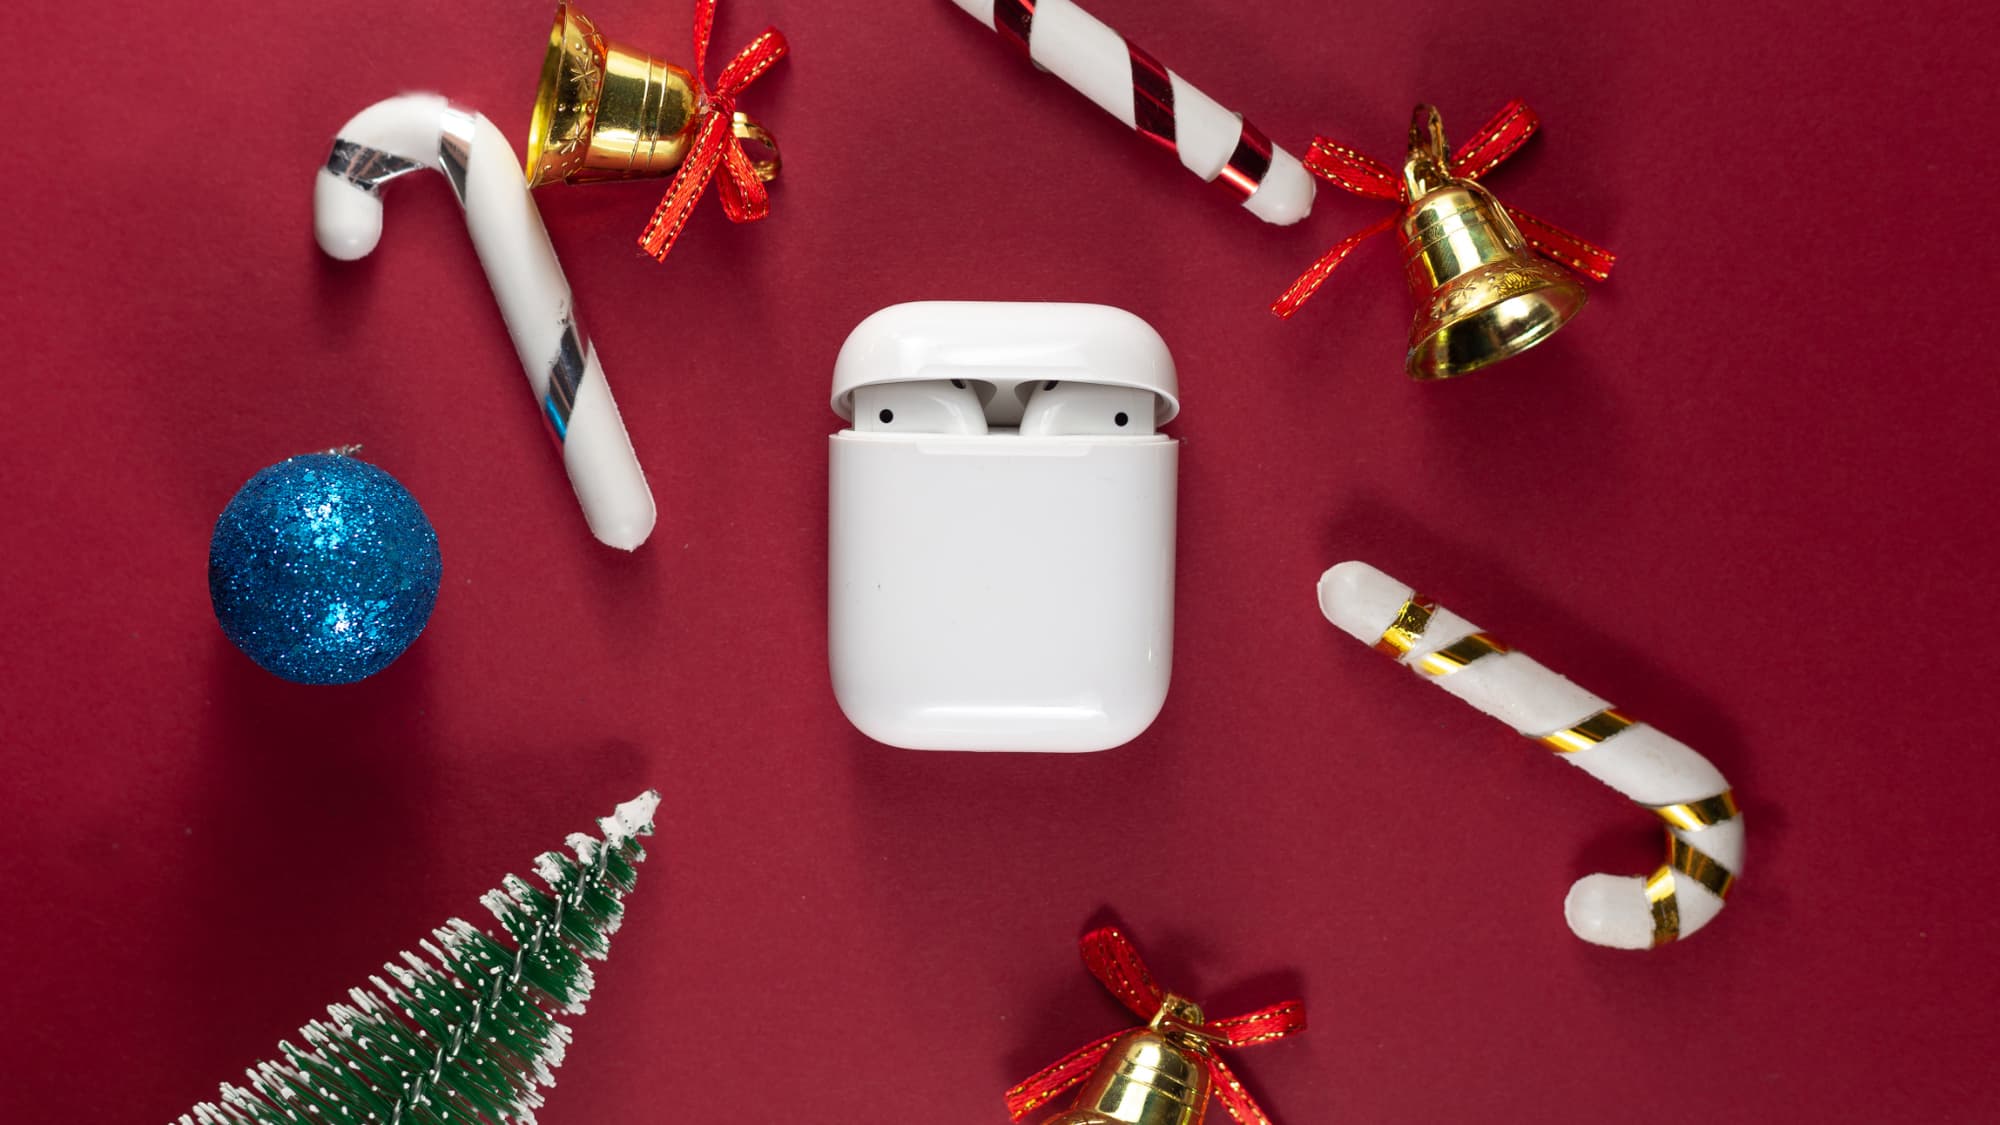 Idée cadeau Apple : les AirPods 2 profitent d'une remise avant Noël - Le  Parisien